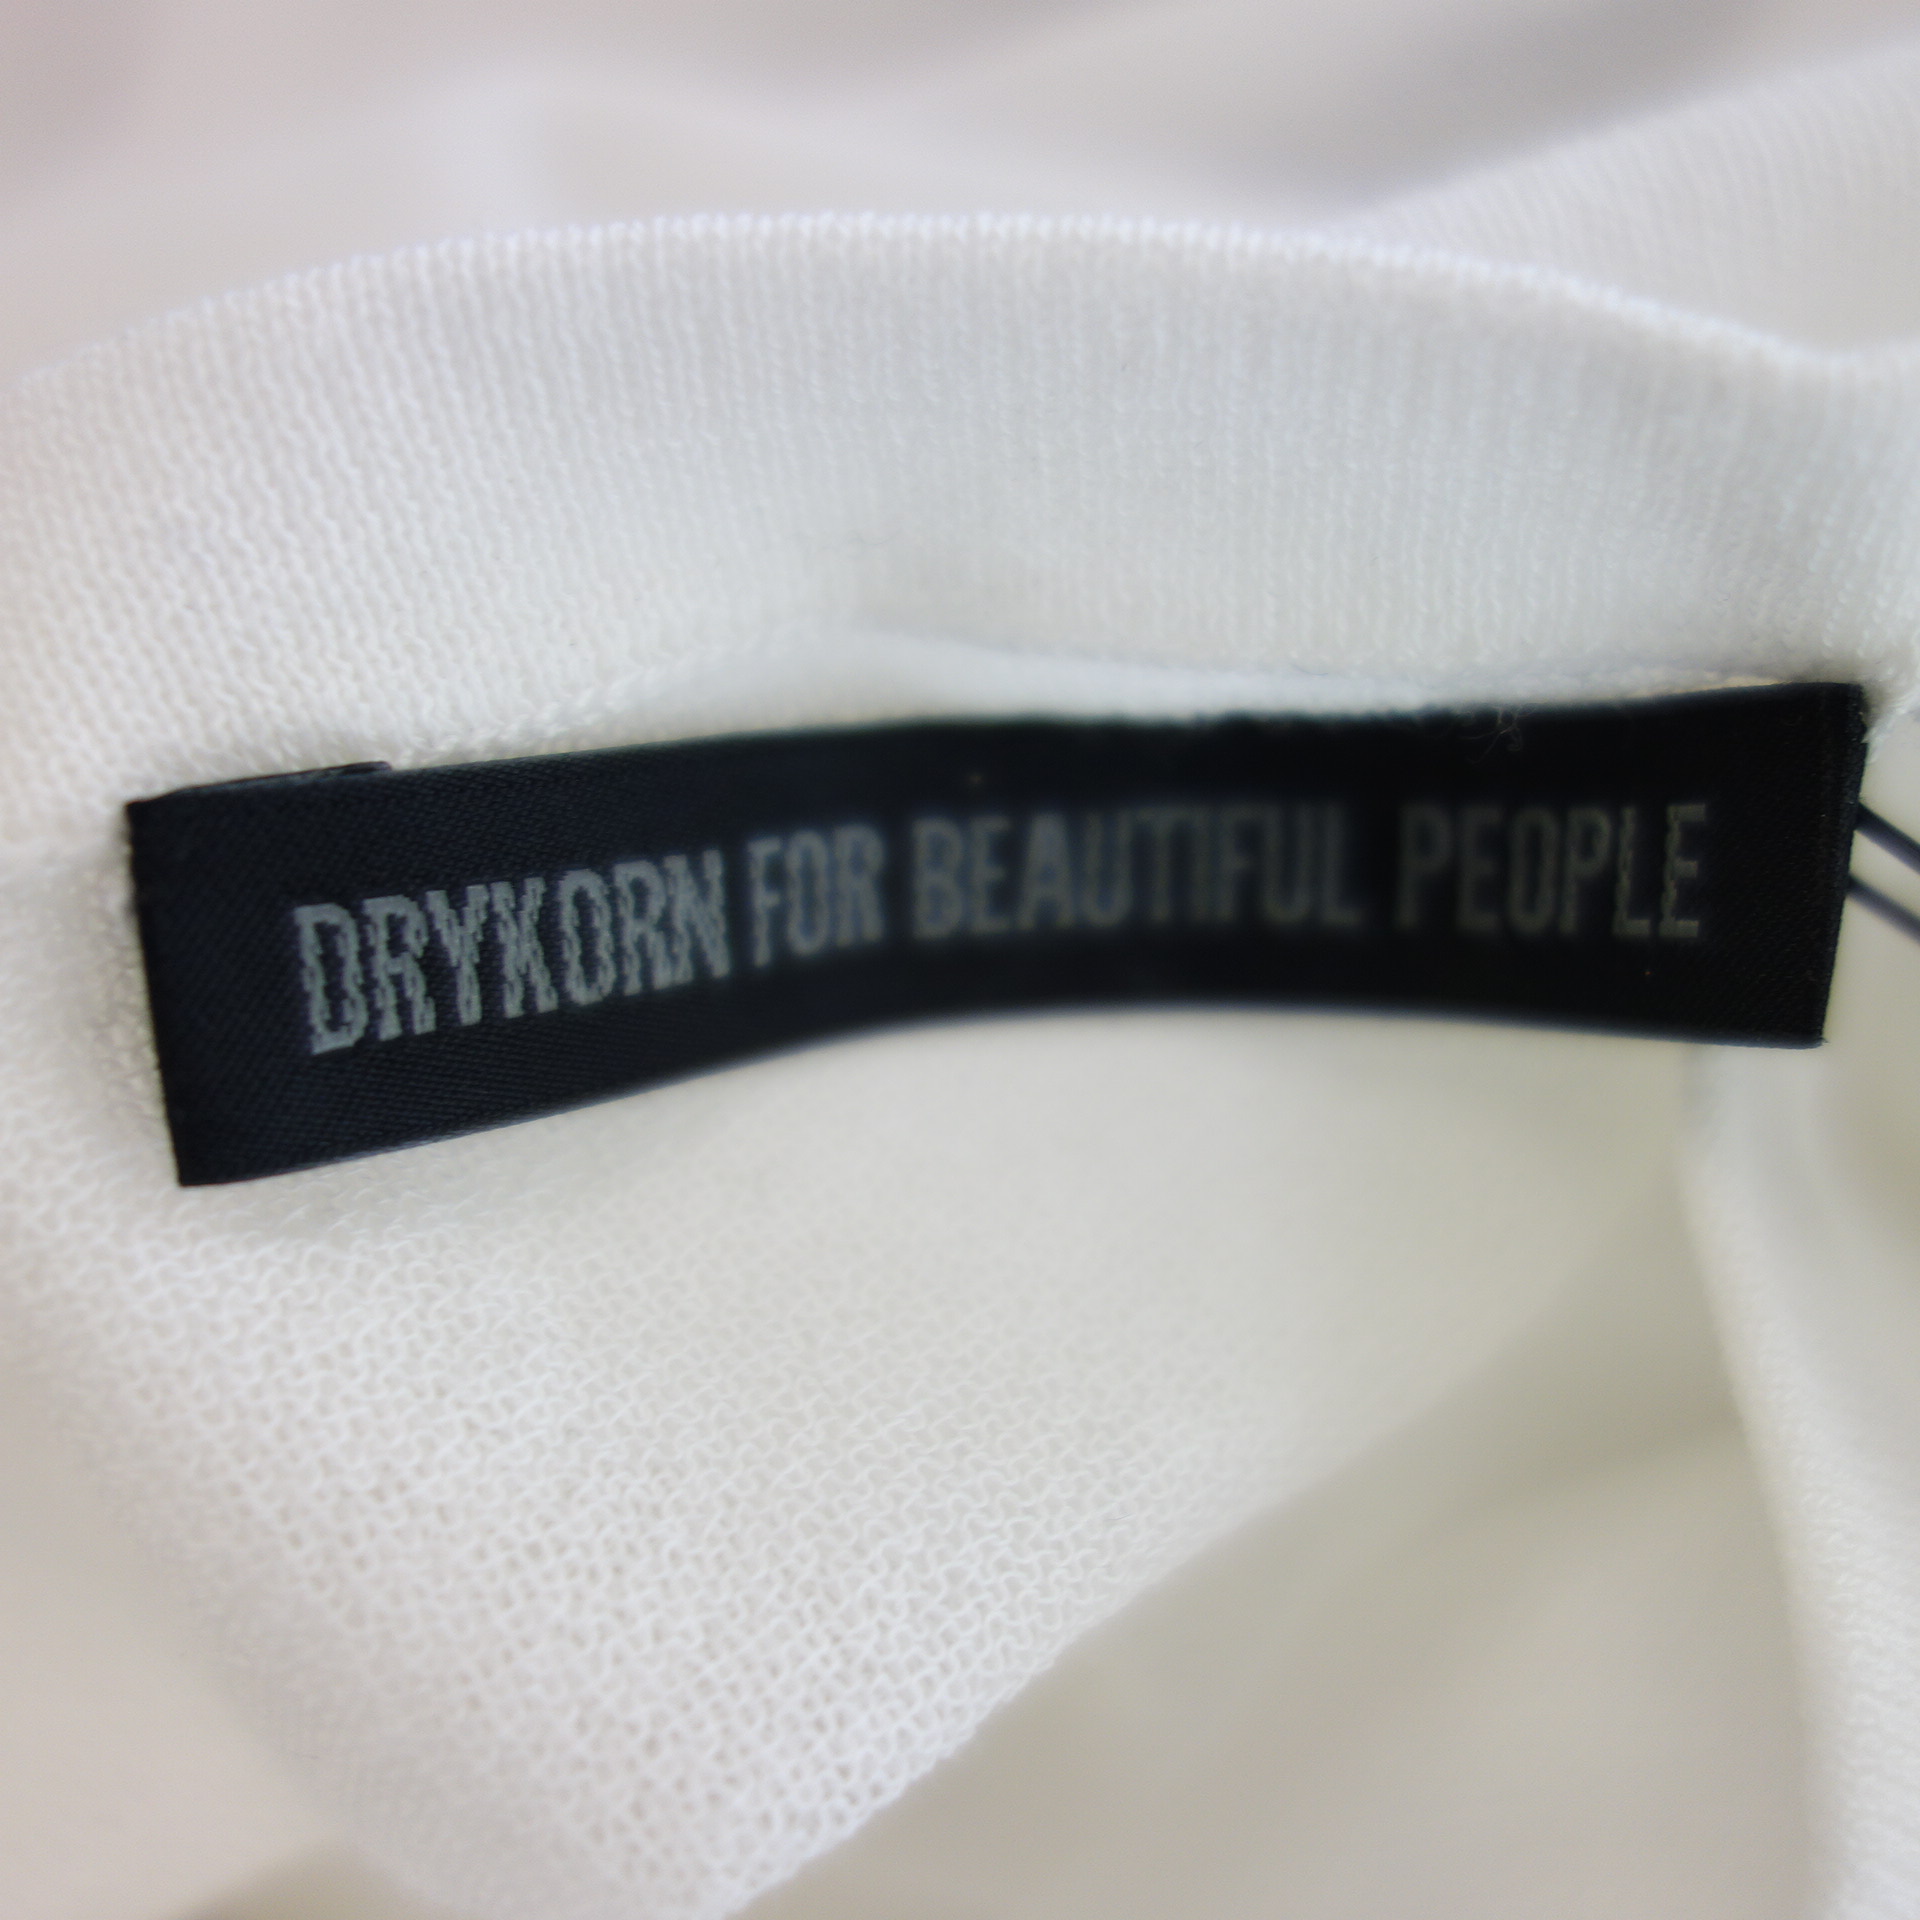 DRYKORN Damen Shirt Damenshirt T-Shirt Oberteil Modell ILVY Weiß Transparent